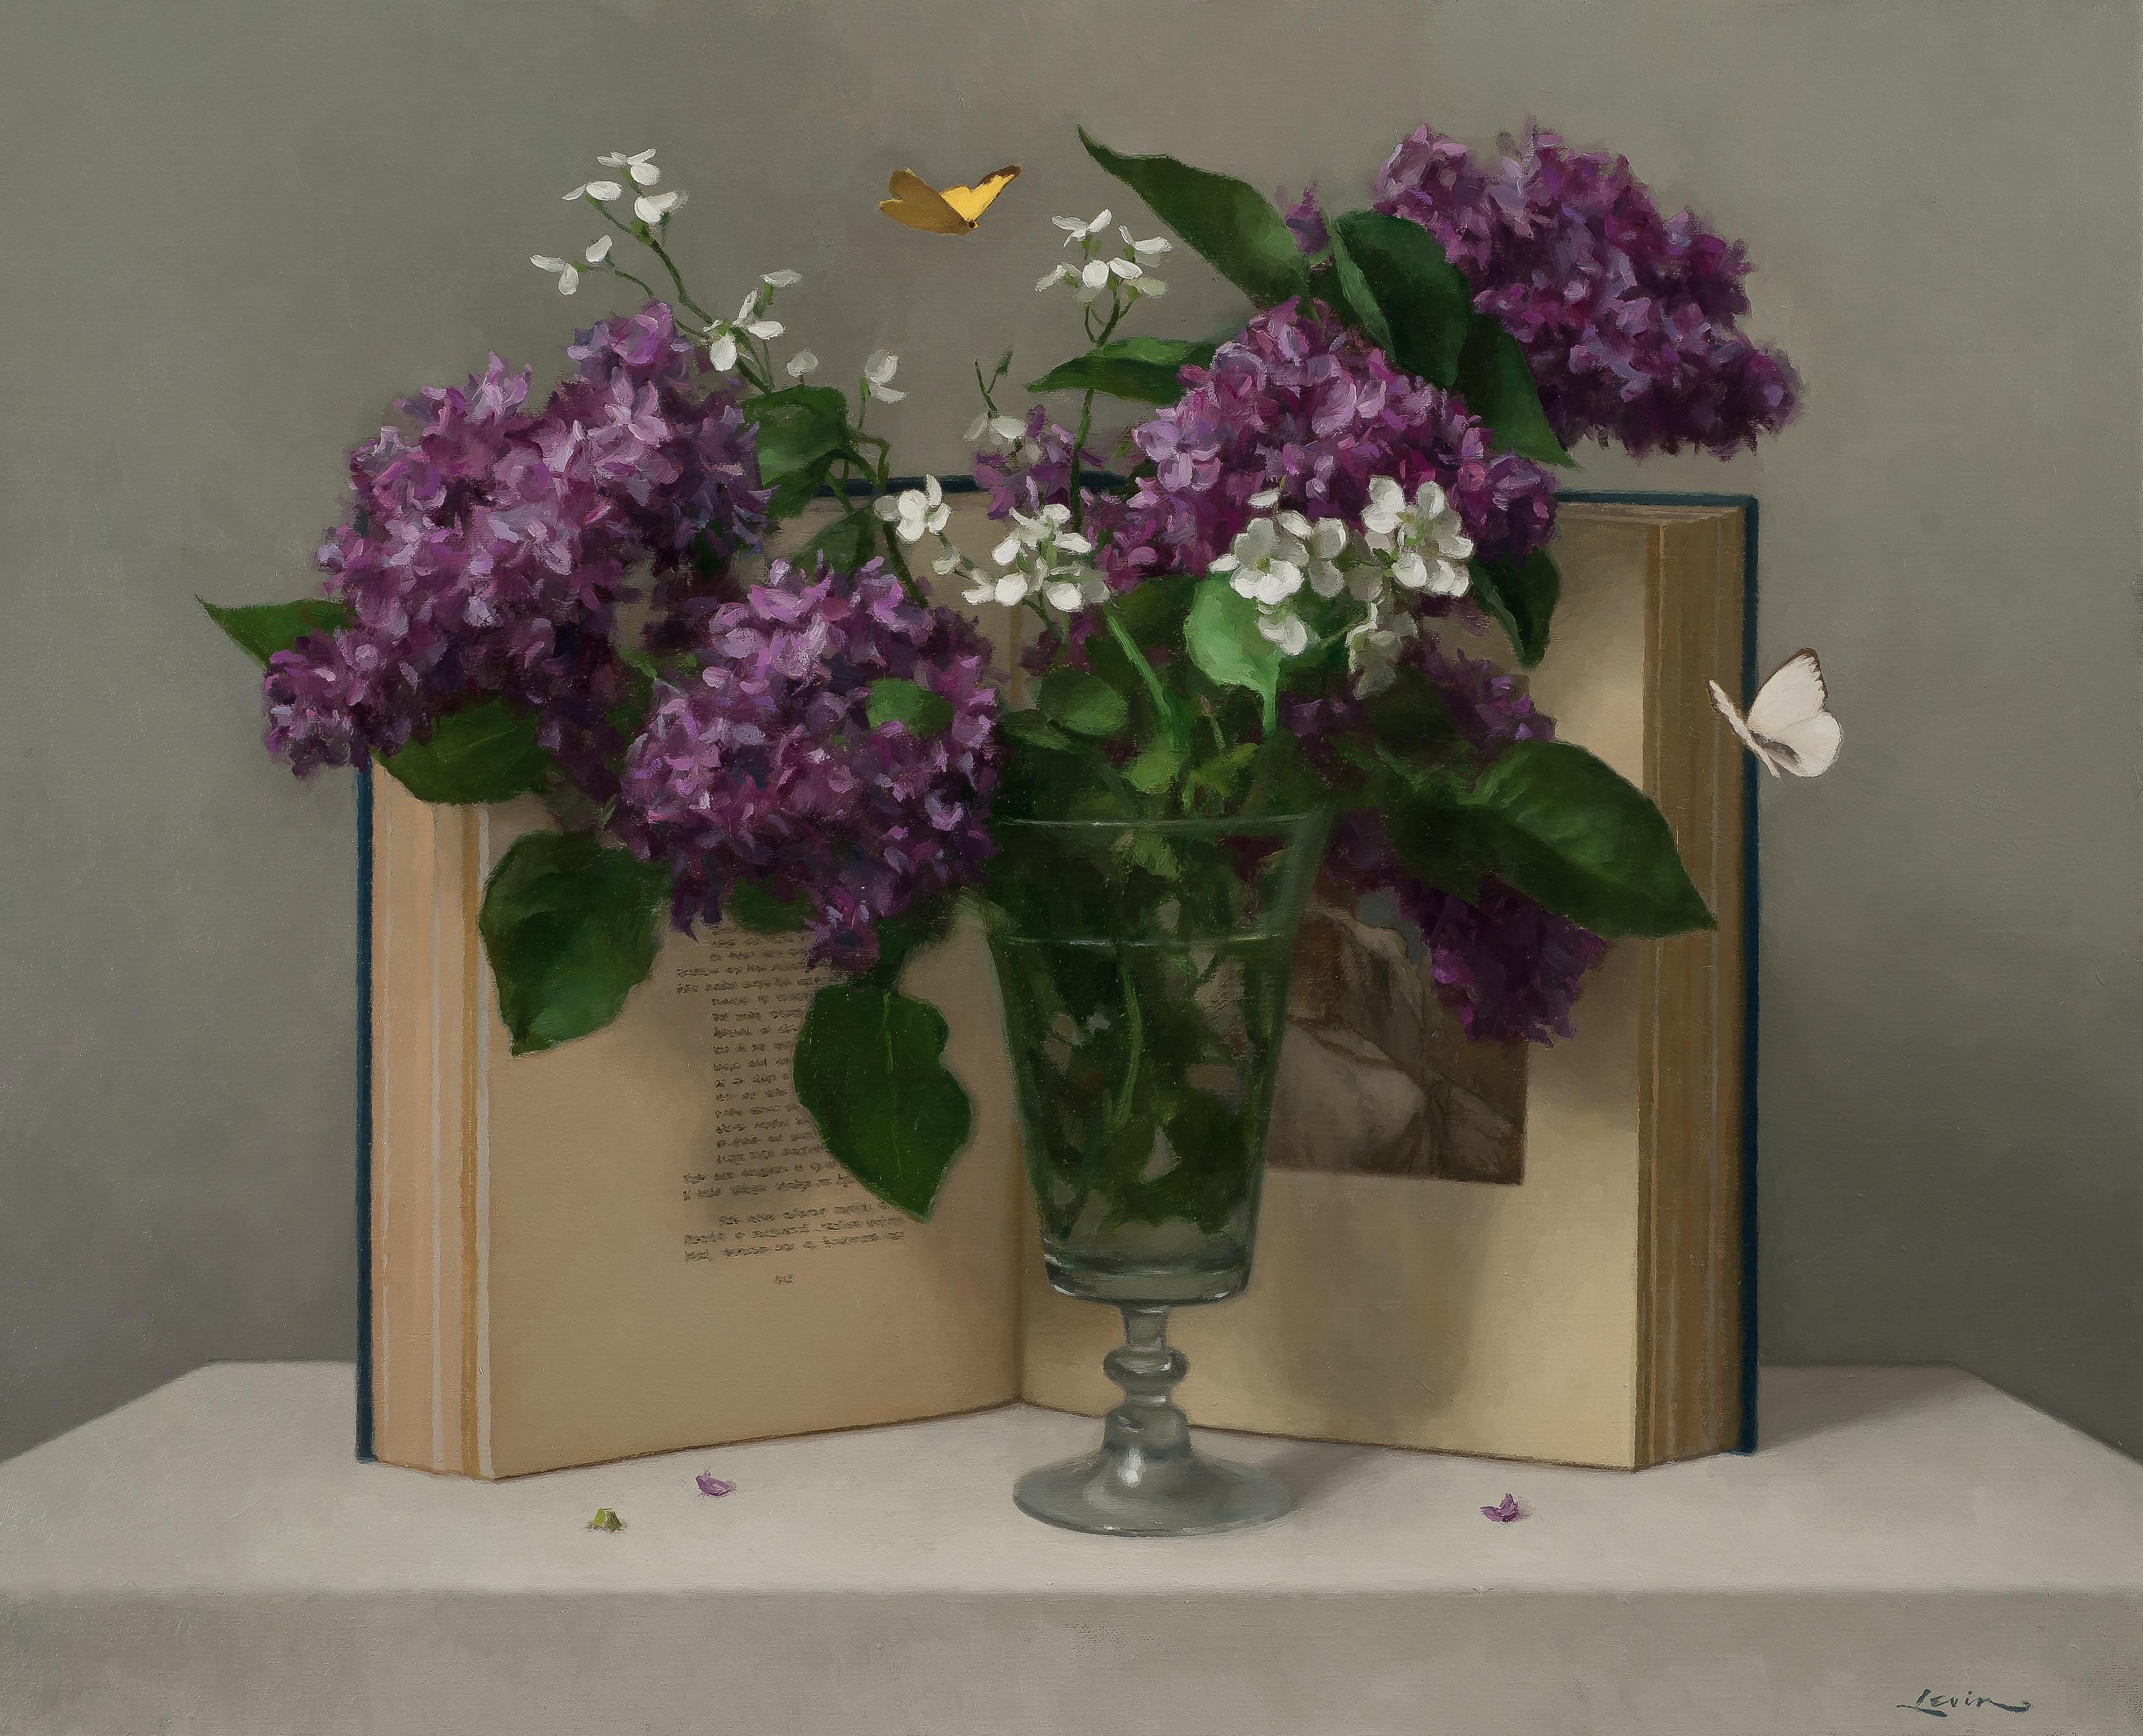 Interior Painting Steven J. Levin - "Lilas et livre" - peinture réaliste contemporaine, flore pourpre et littérature.